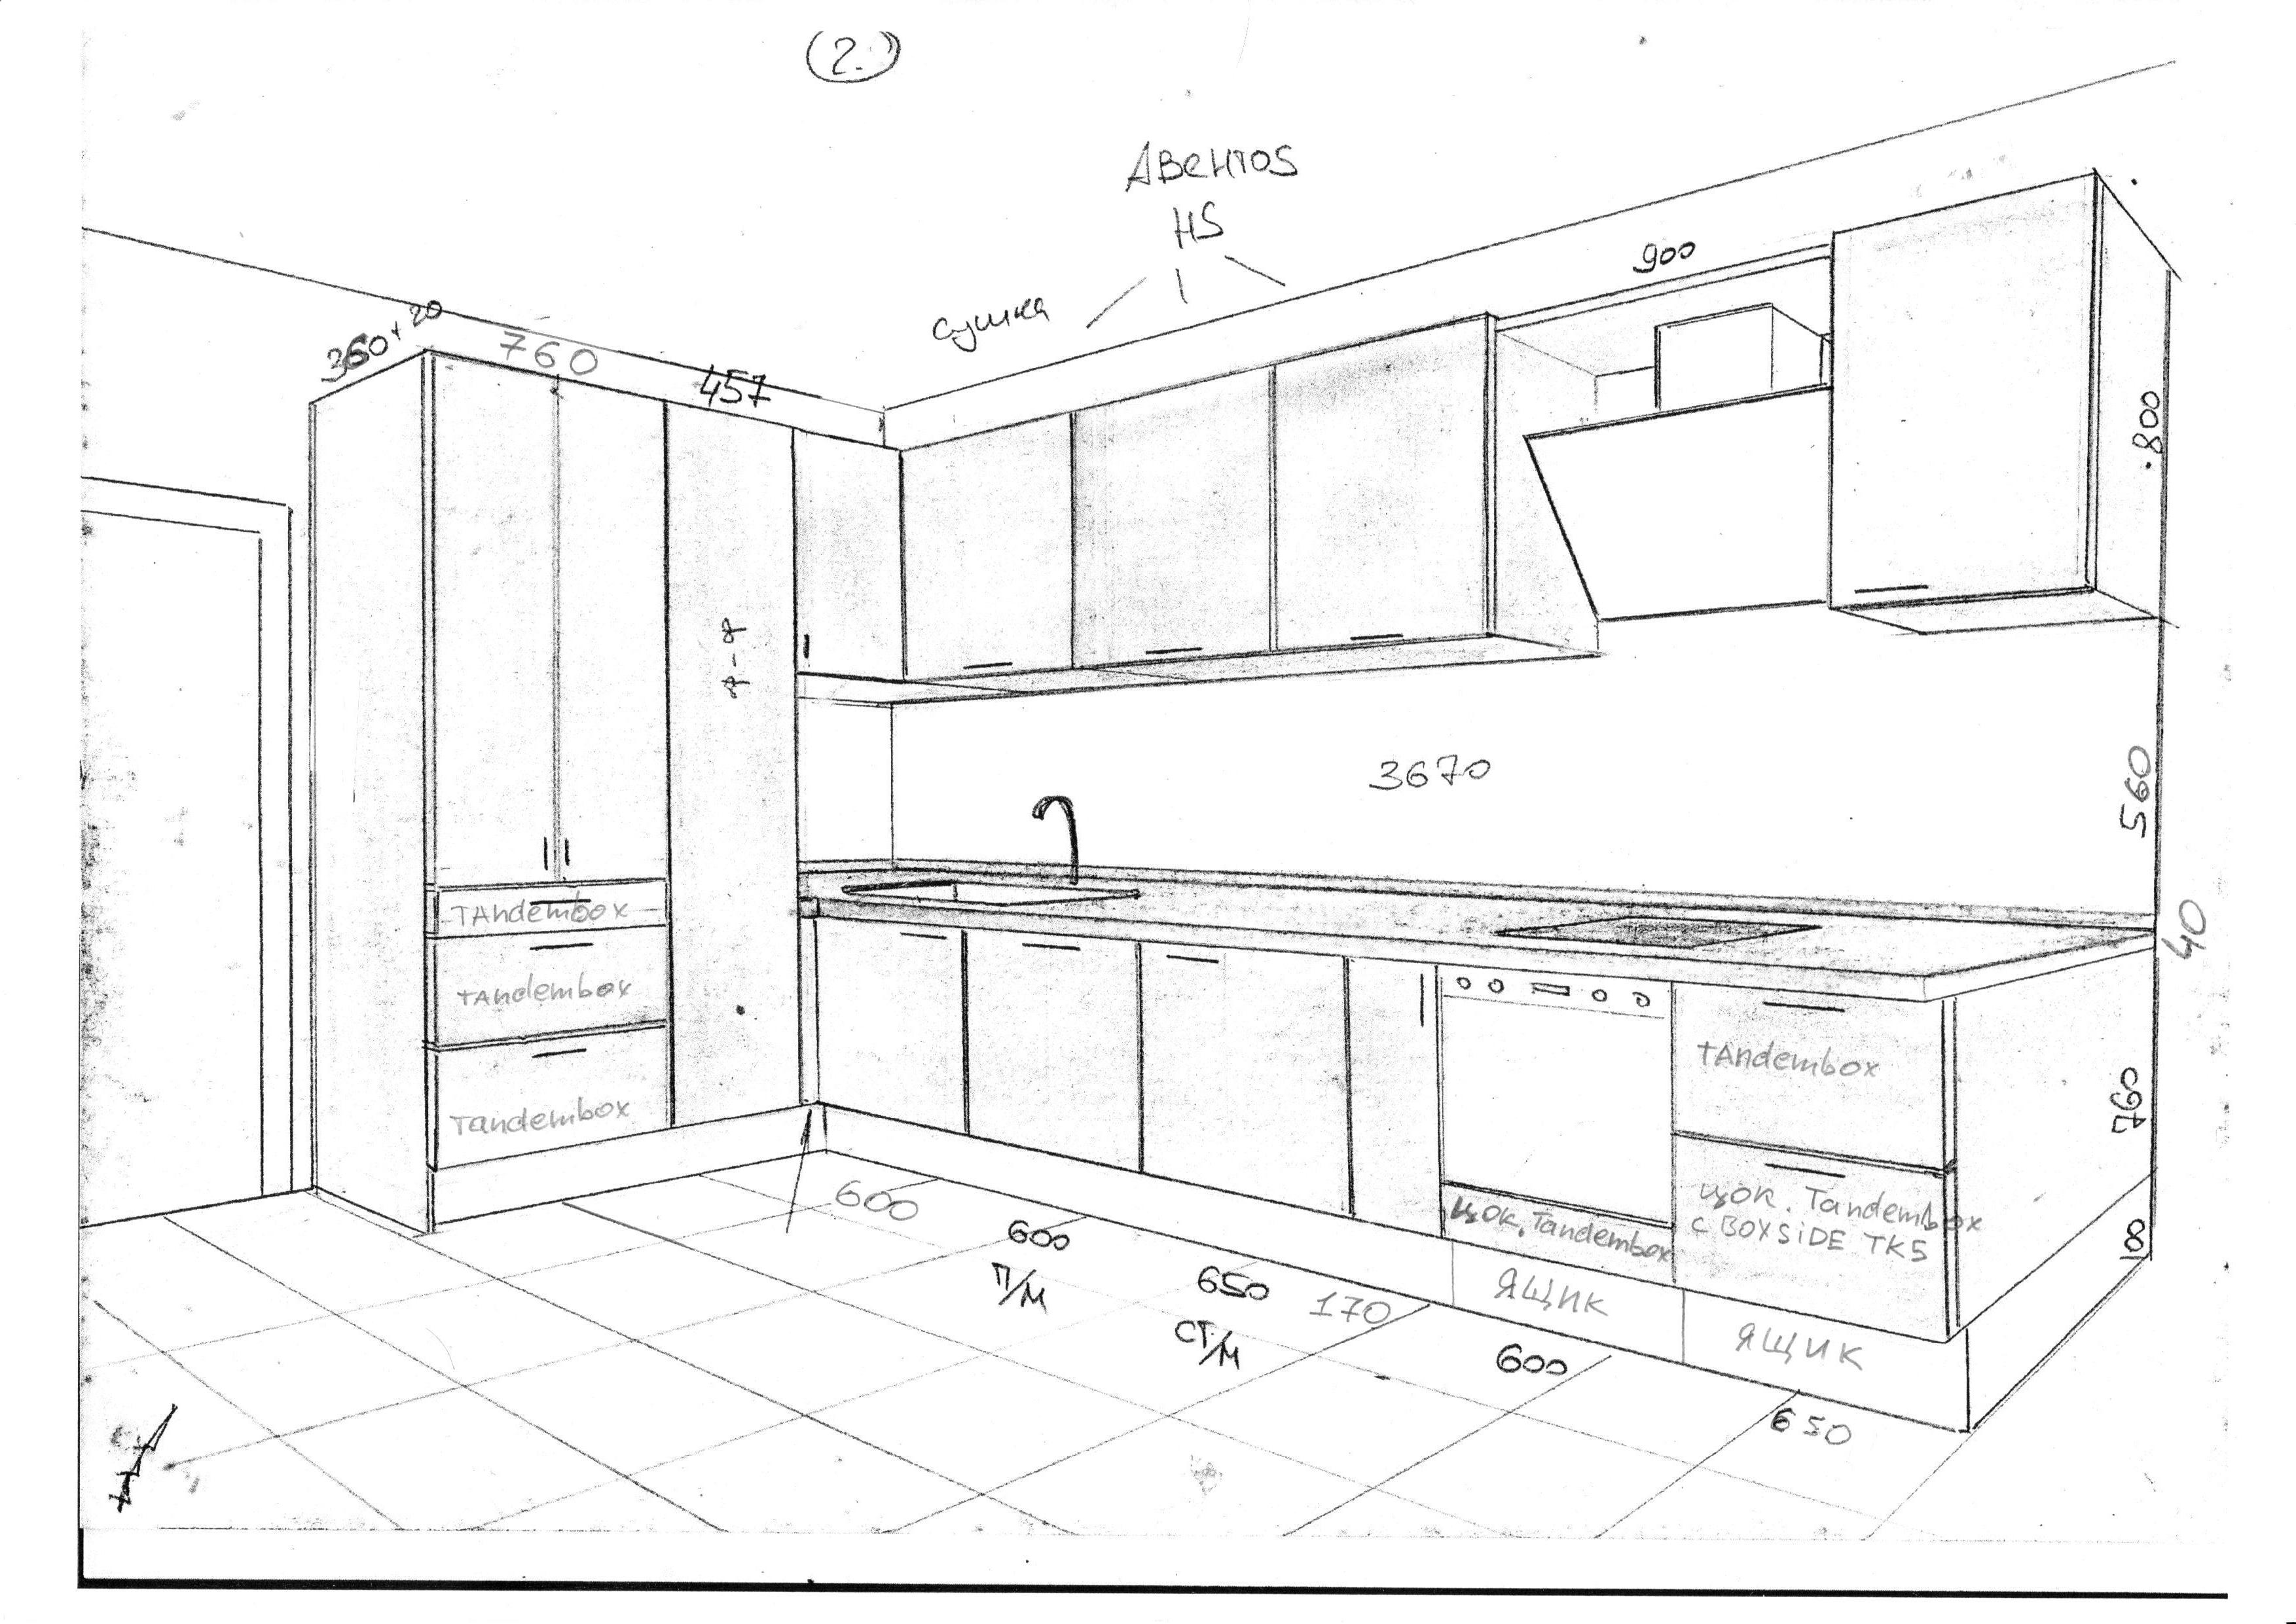 размеры деталей кухонных шкафов для распила